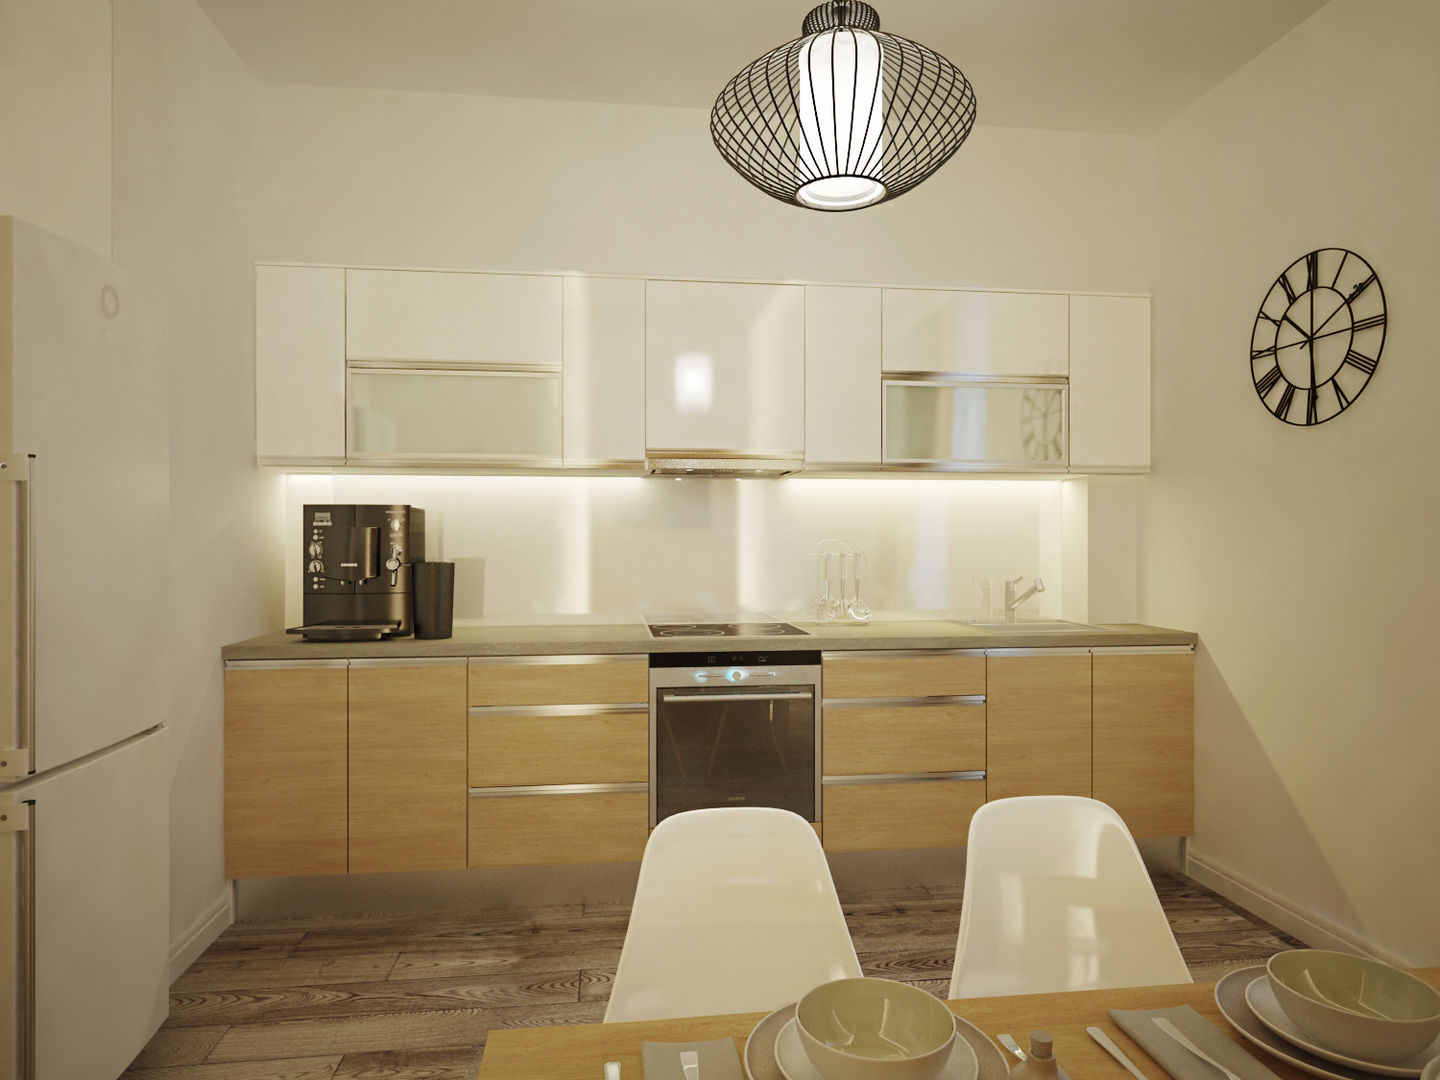 Квартира в современном минимализме, Polovets design studio Polovets design studio ห้องครัว